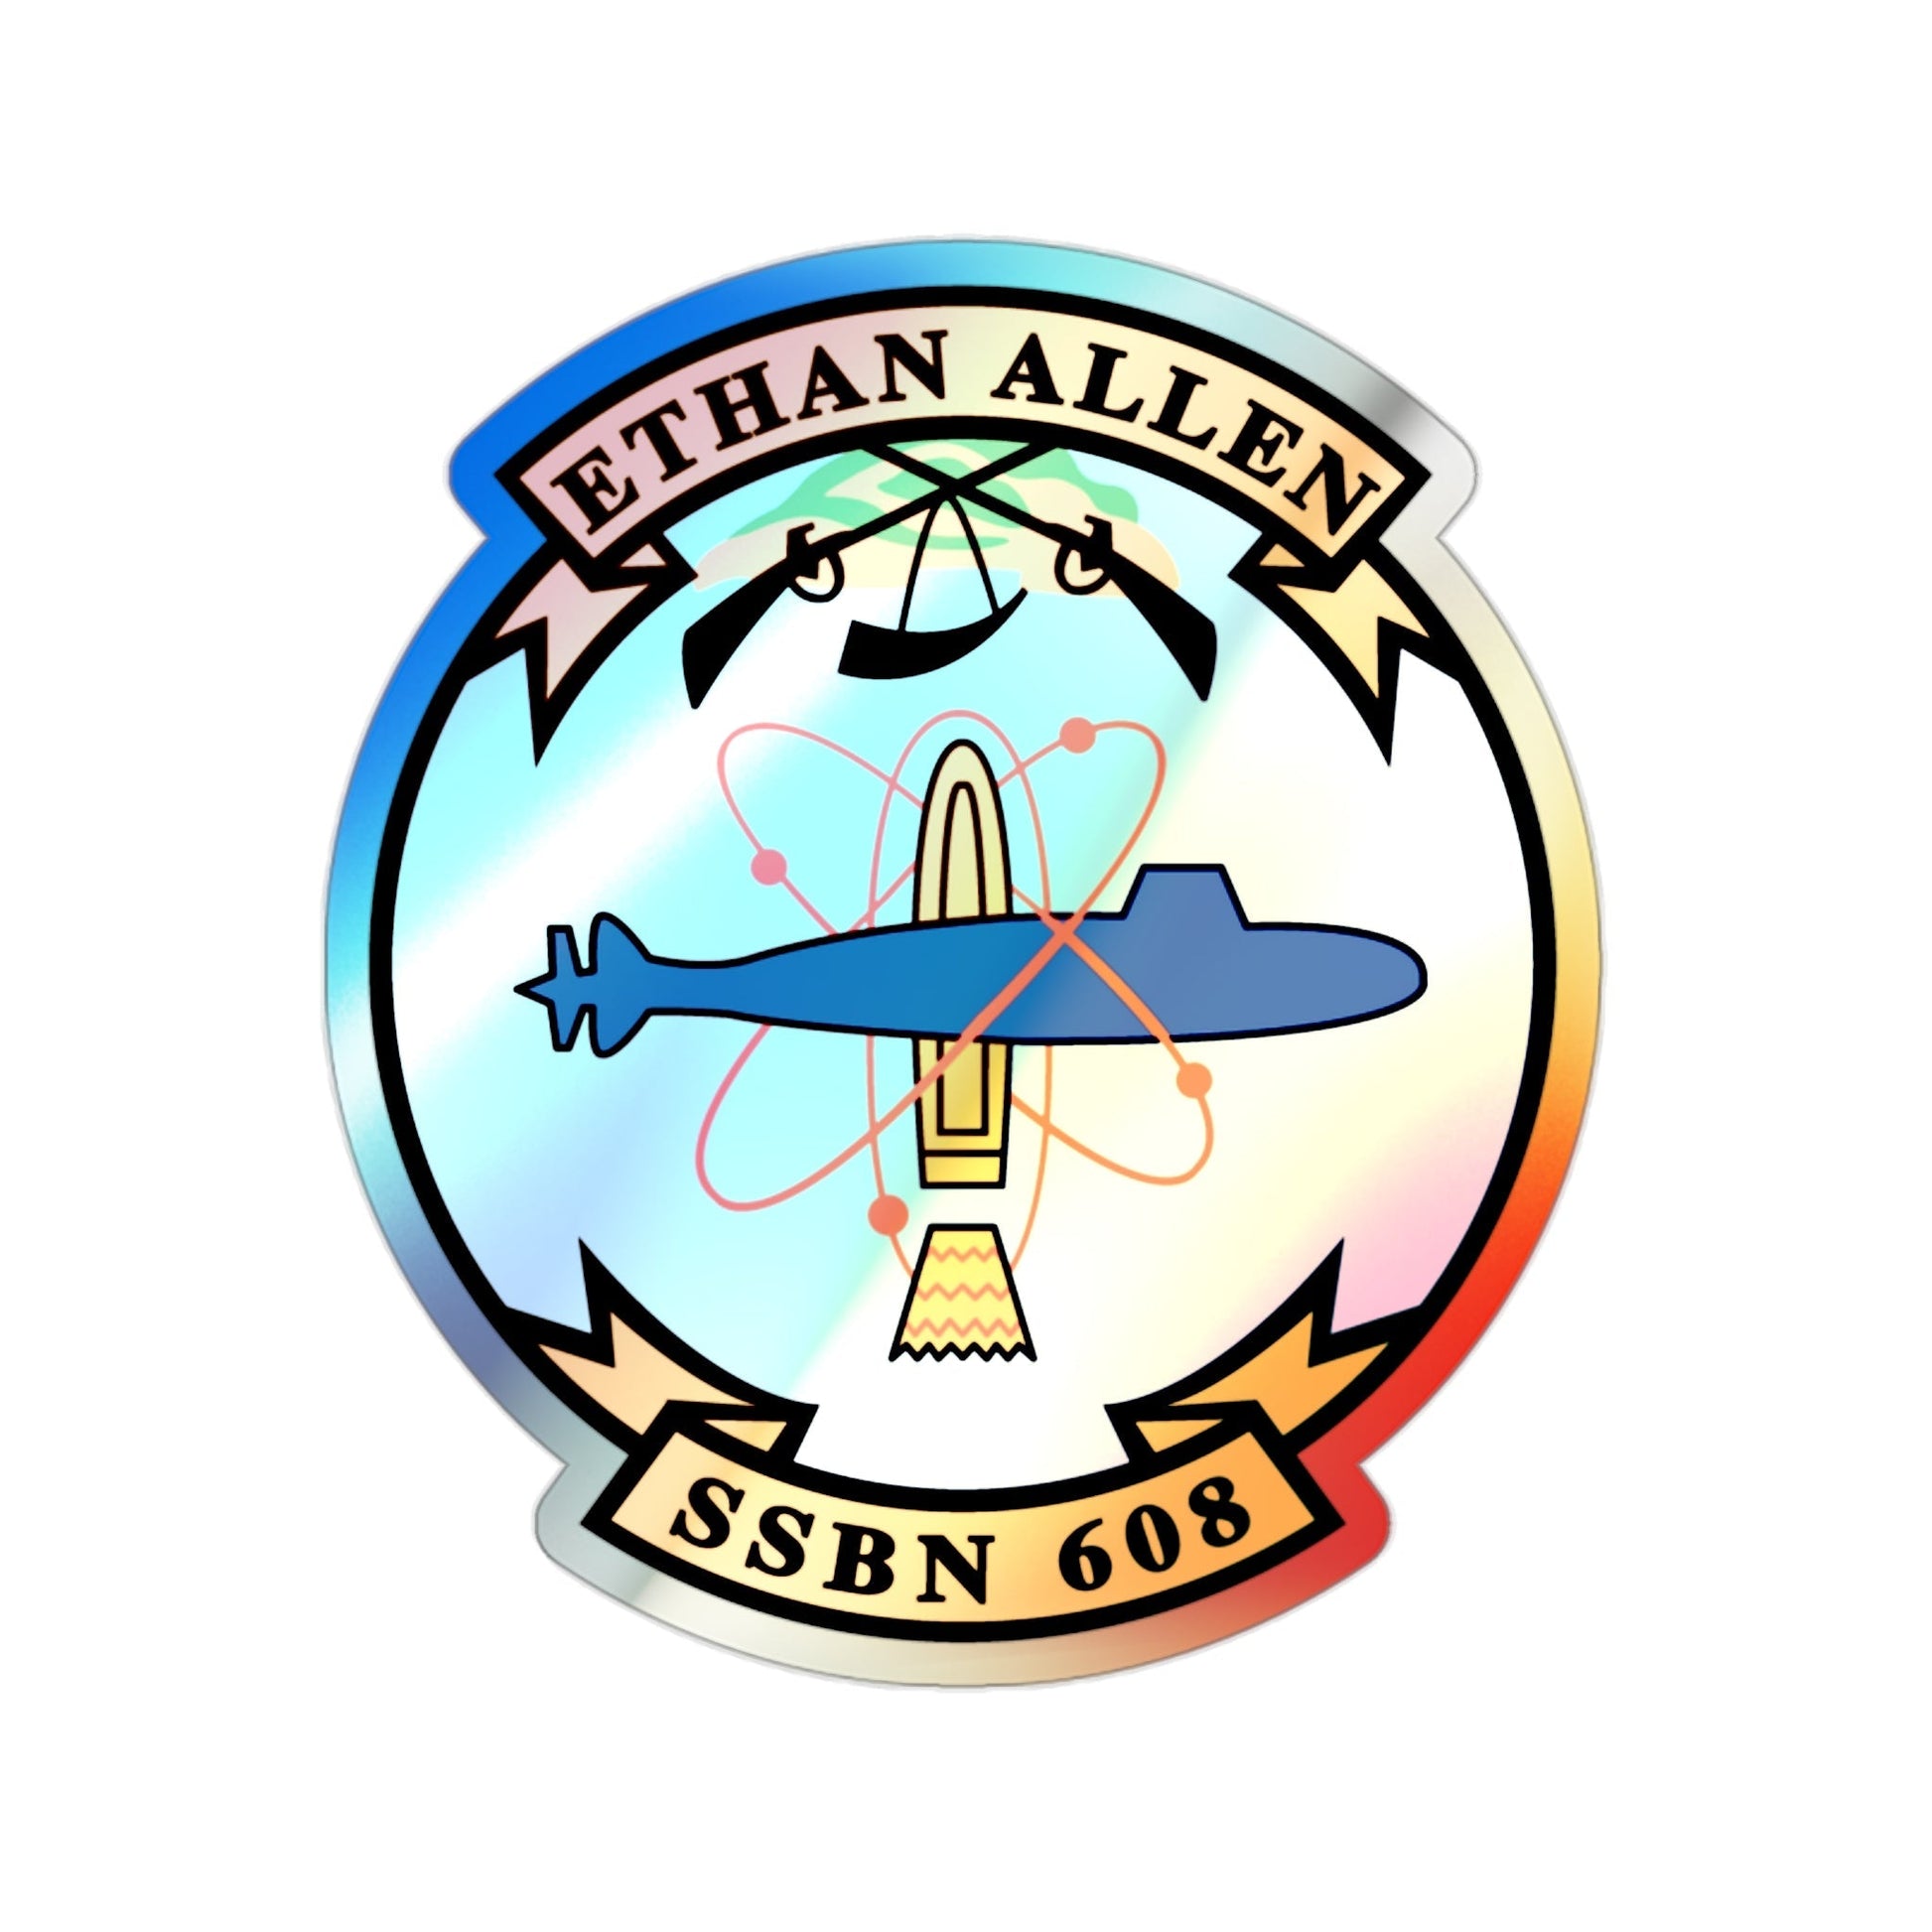 Ethan Allen SSBN 608 (U.S. Navy) Holographic STICKER Die-Cut Vinyl Decal-2 Inch-The Sticker Space